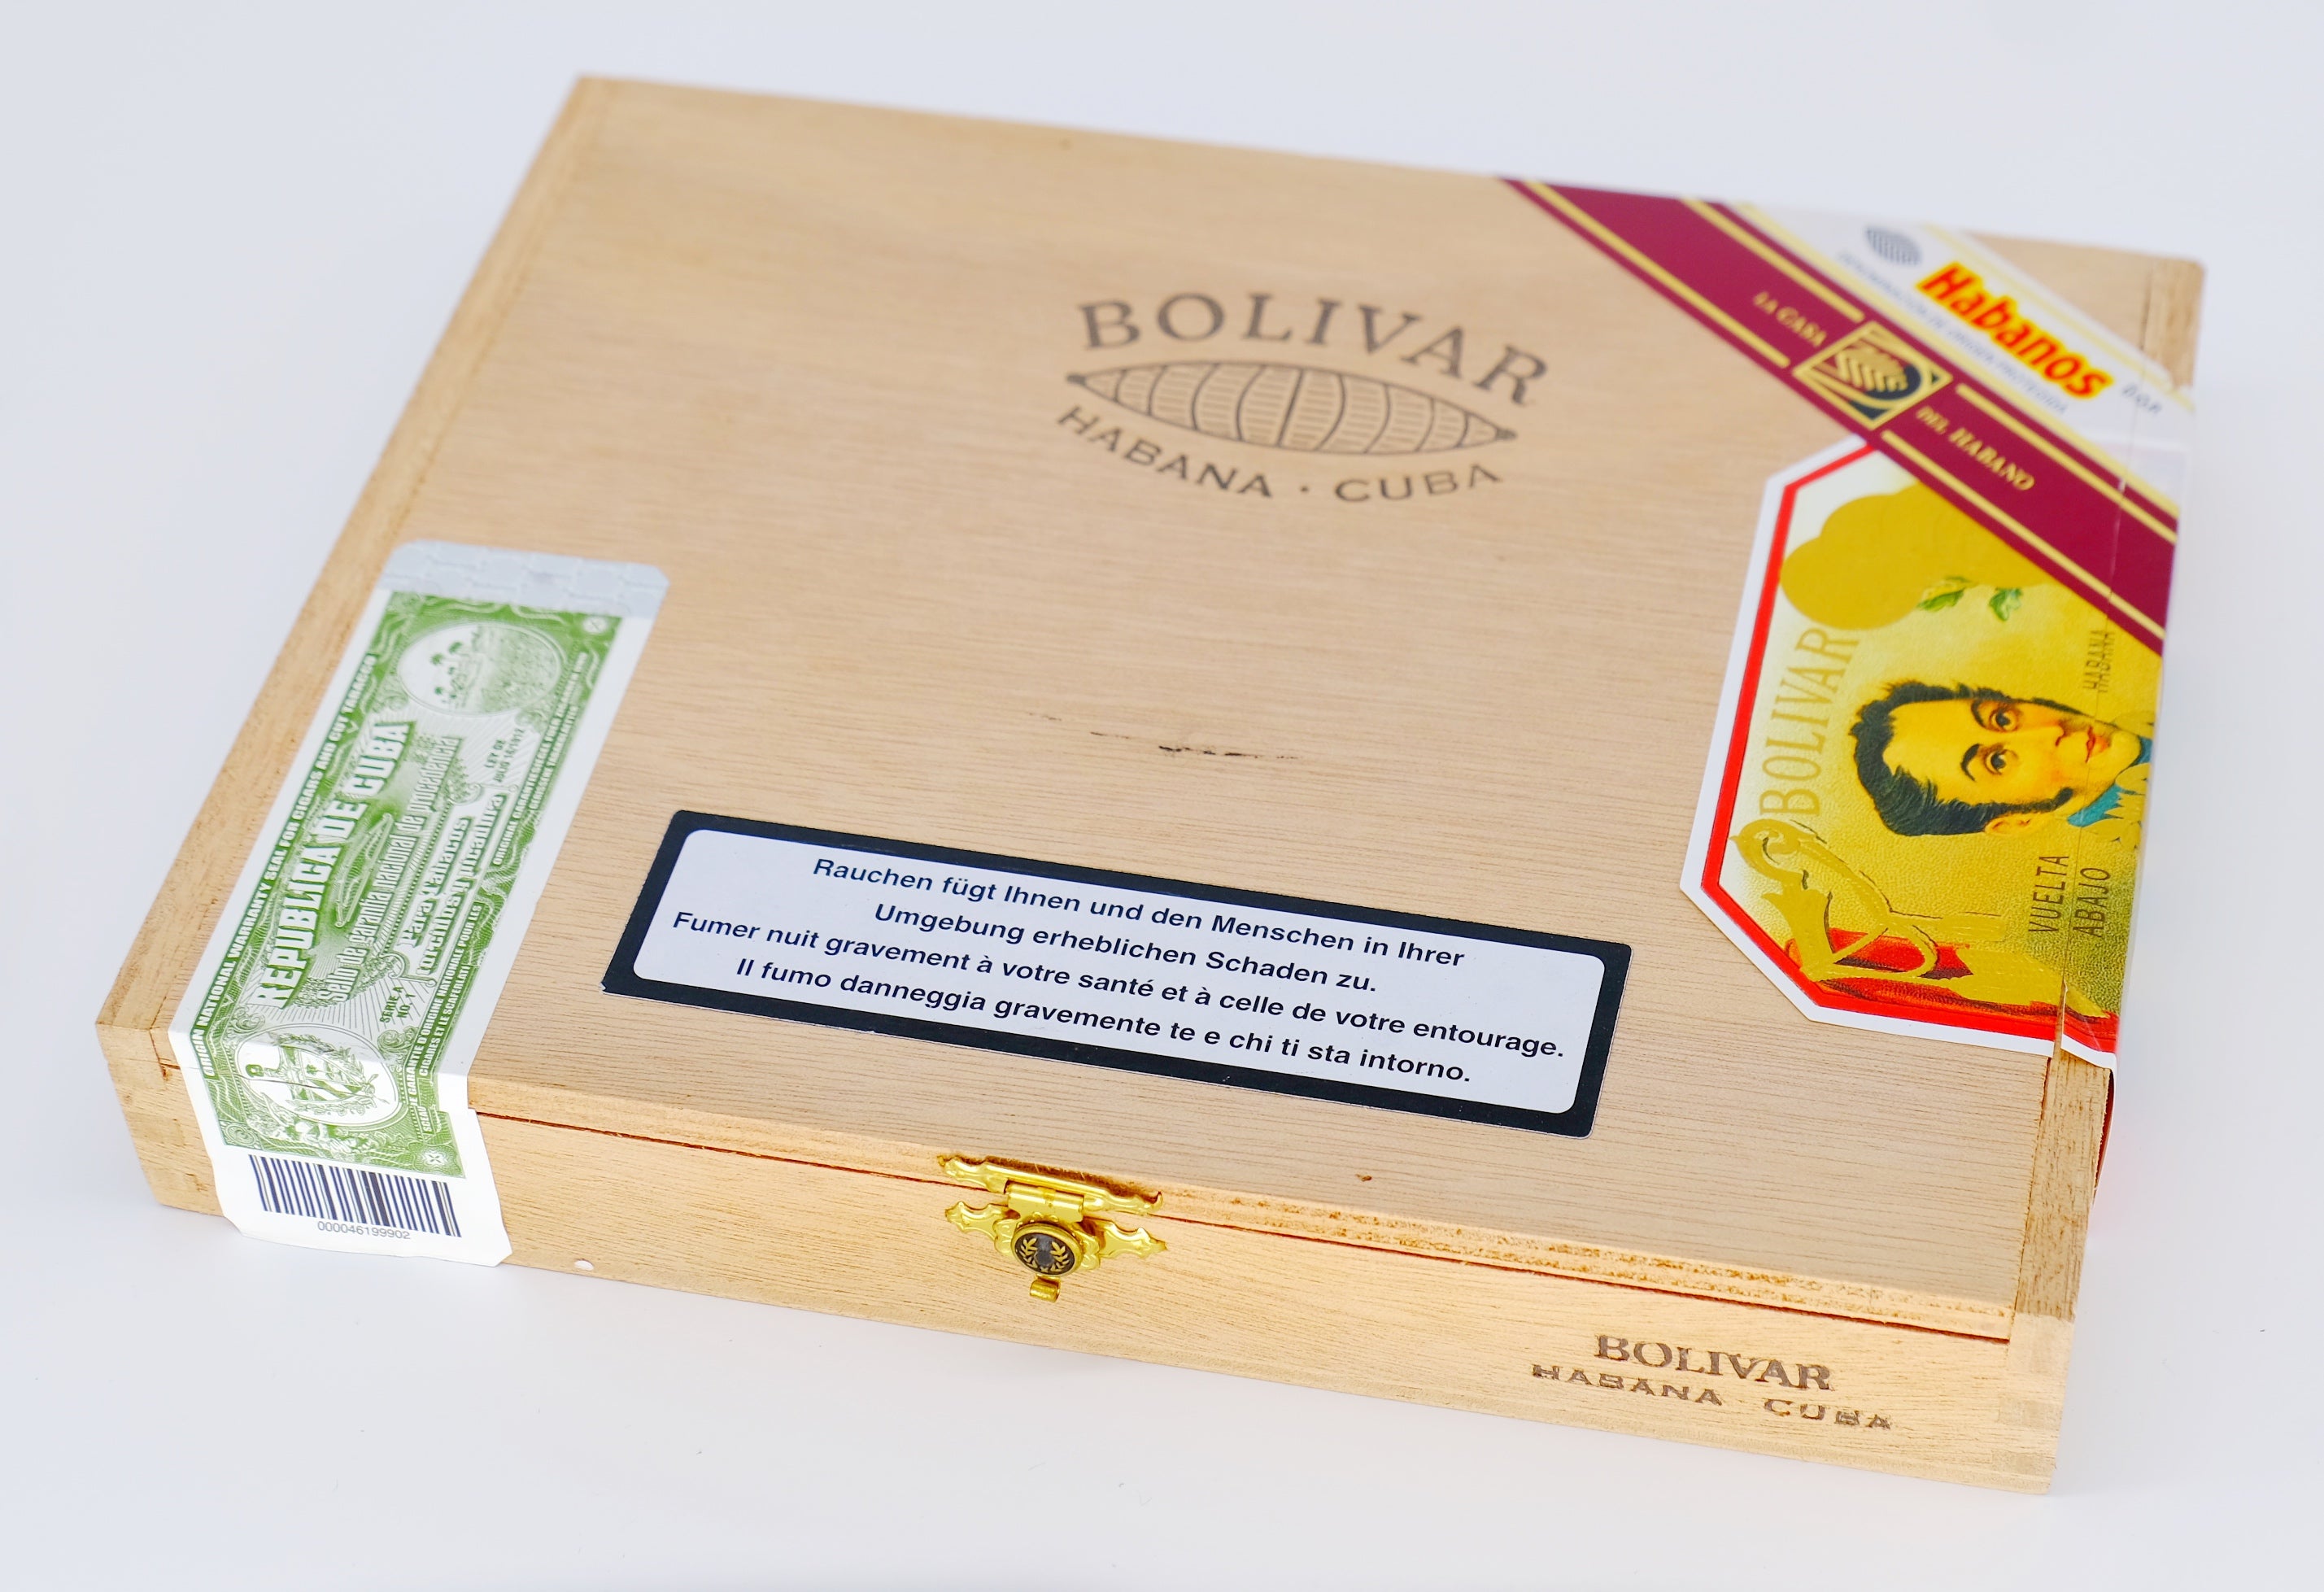 Bolivar Libertador Zigarre La Casa de Habano limited Edition_Zigarren Box geschlossen